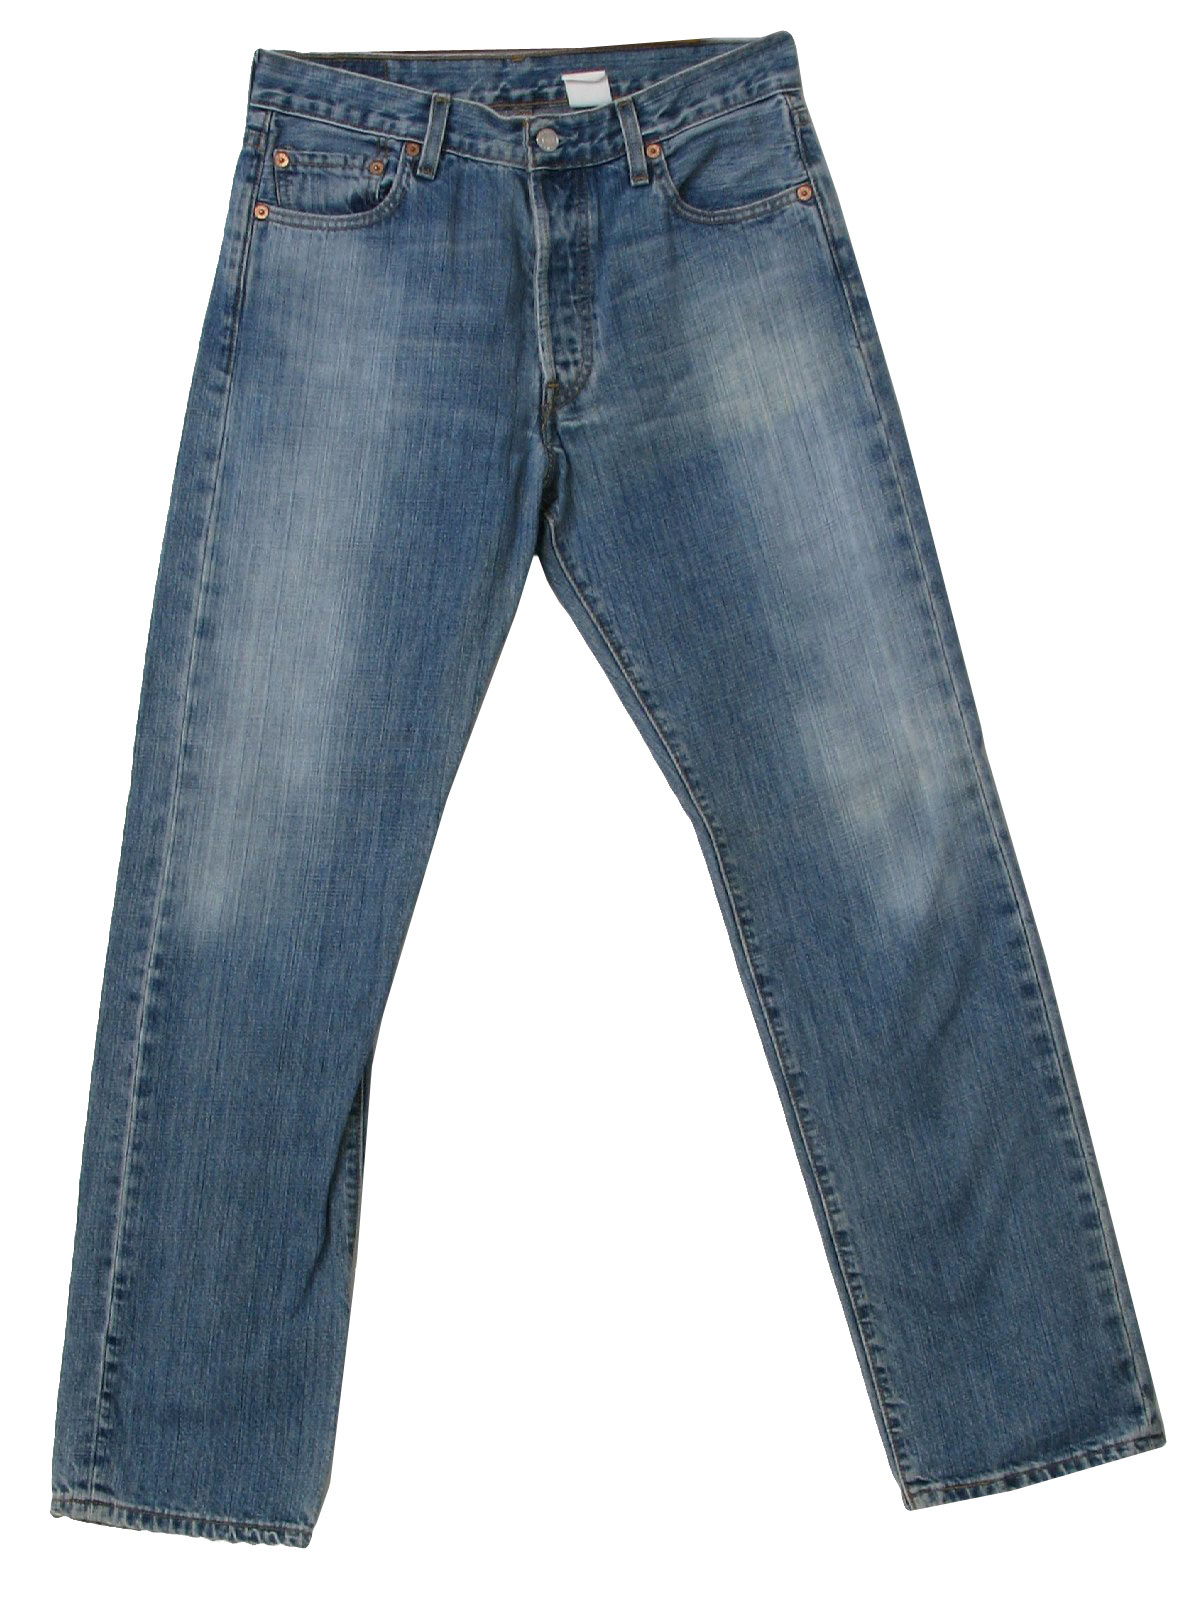 90s Vintage Levis Pants: 90s -Levis- Mens faded cotton denim jeans with ...